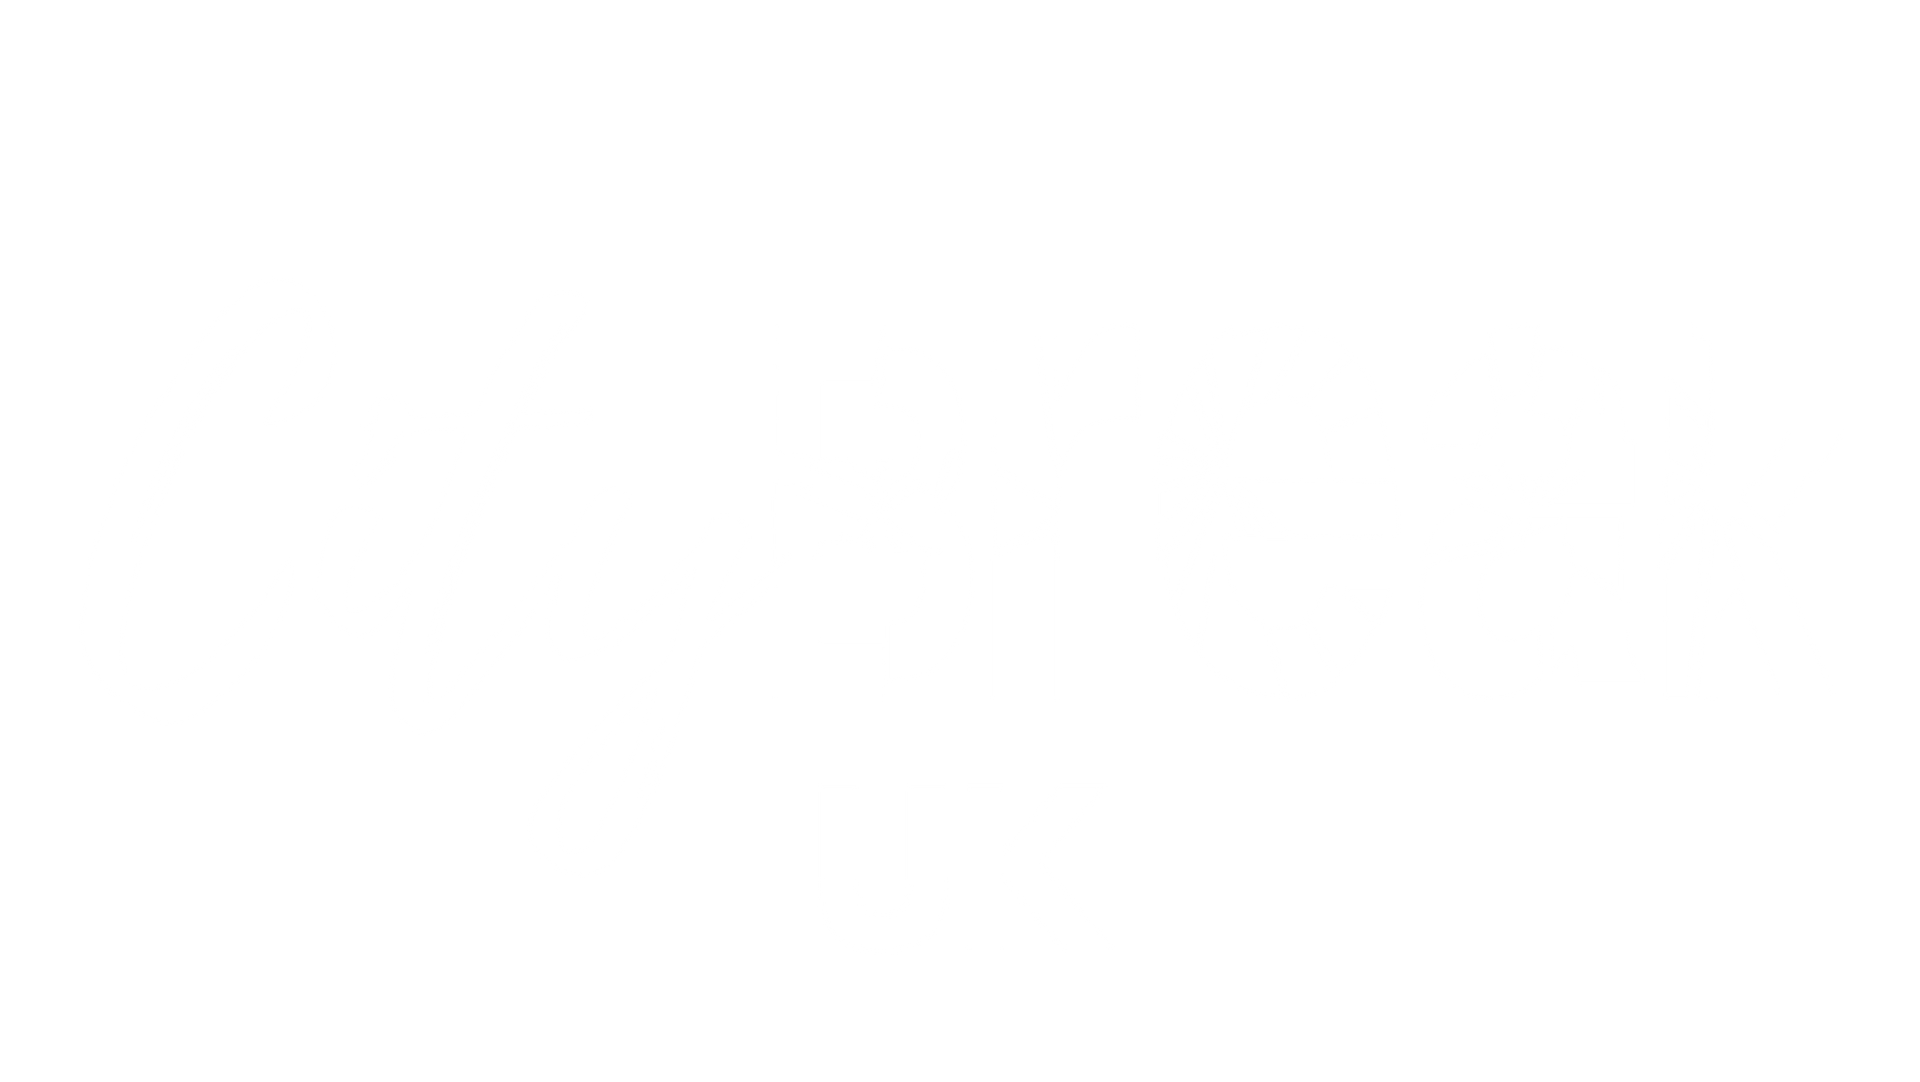 City Break UK